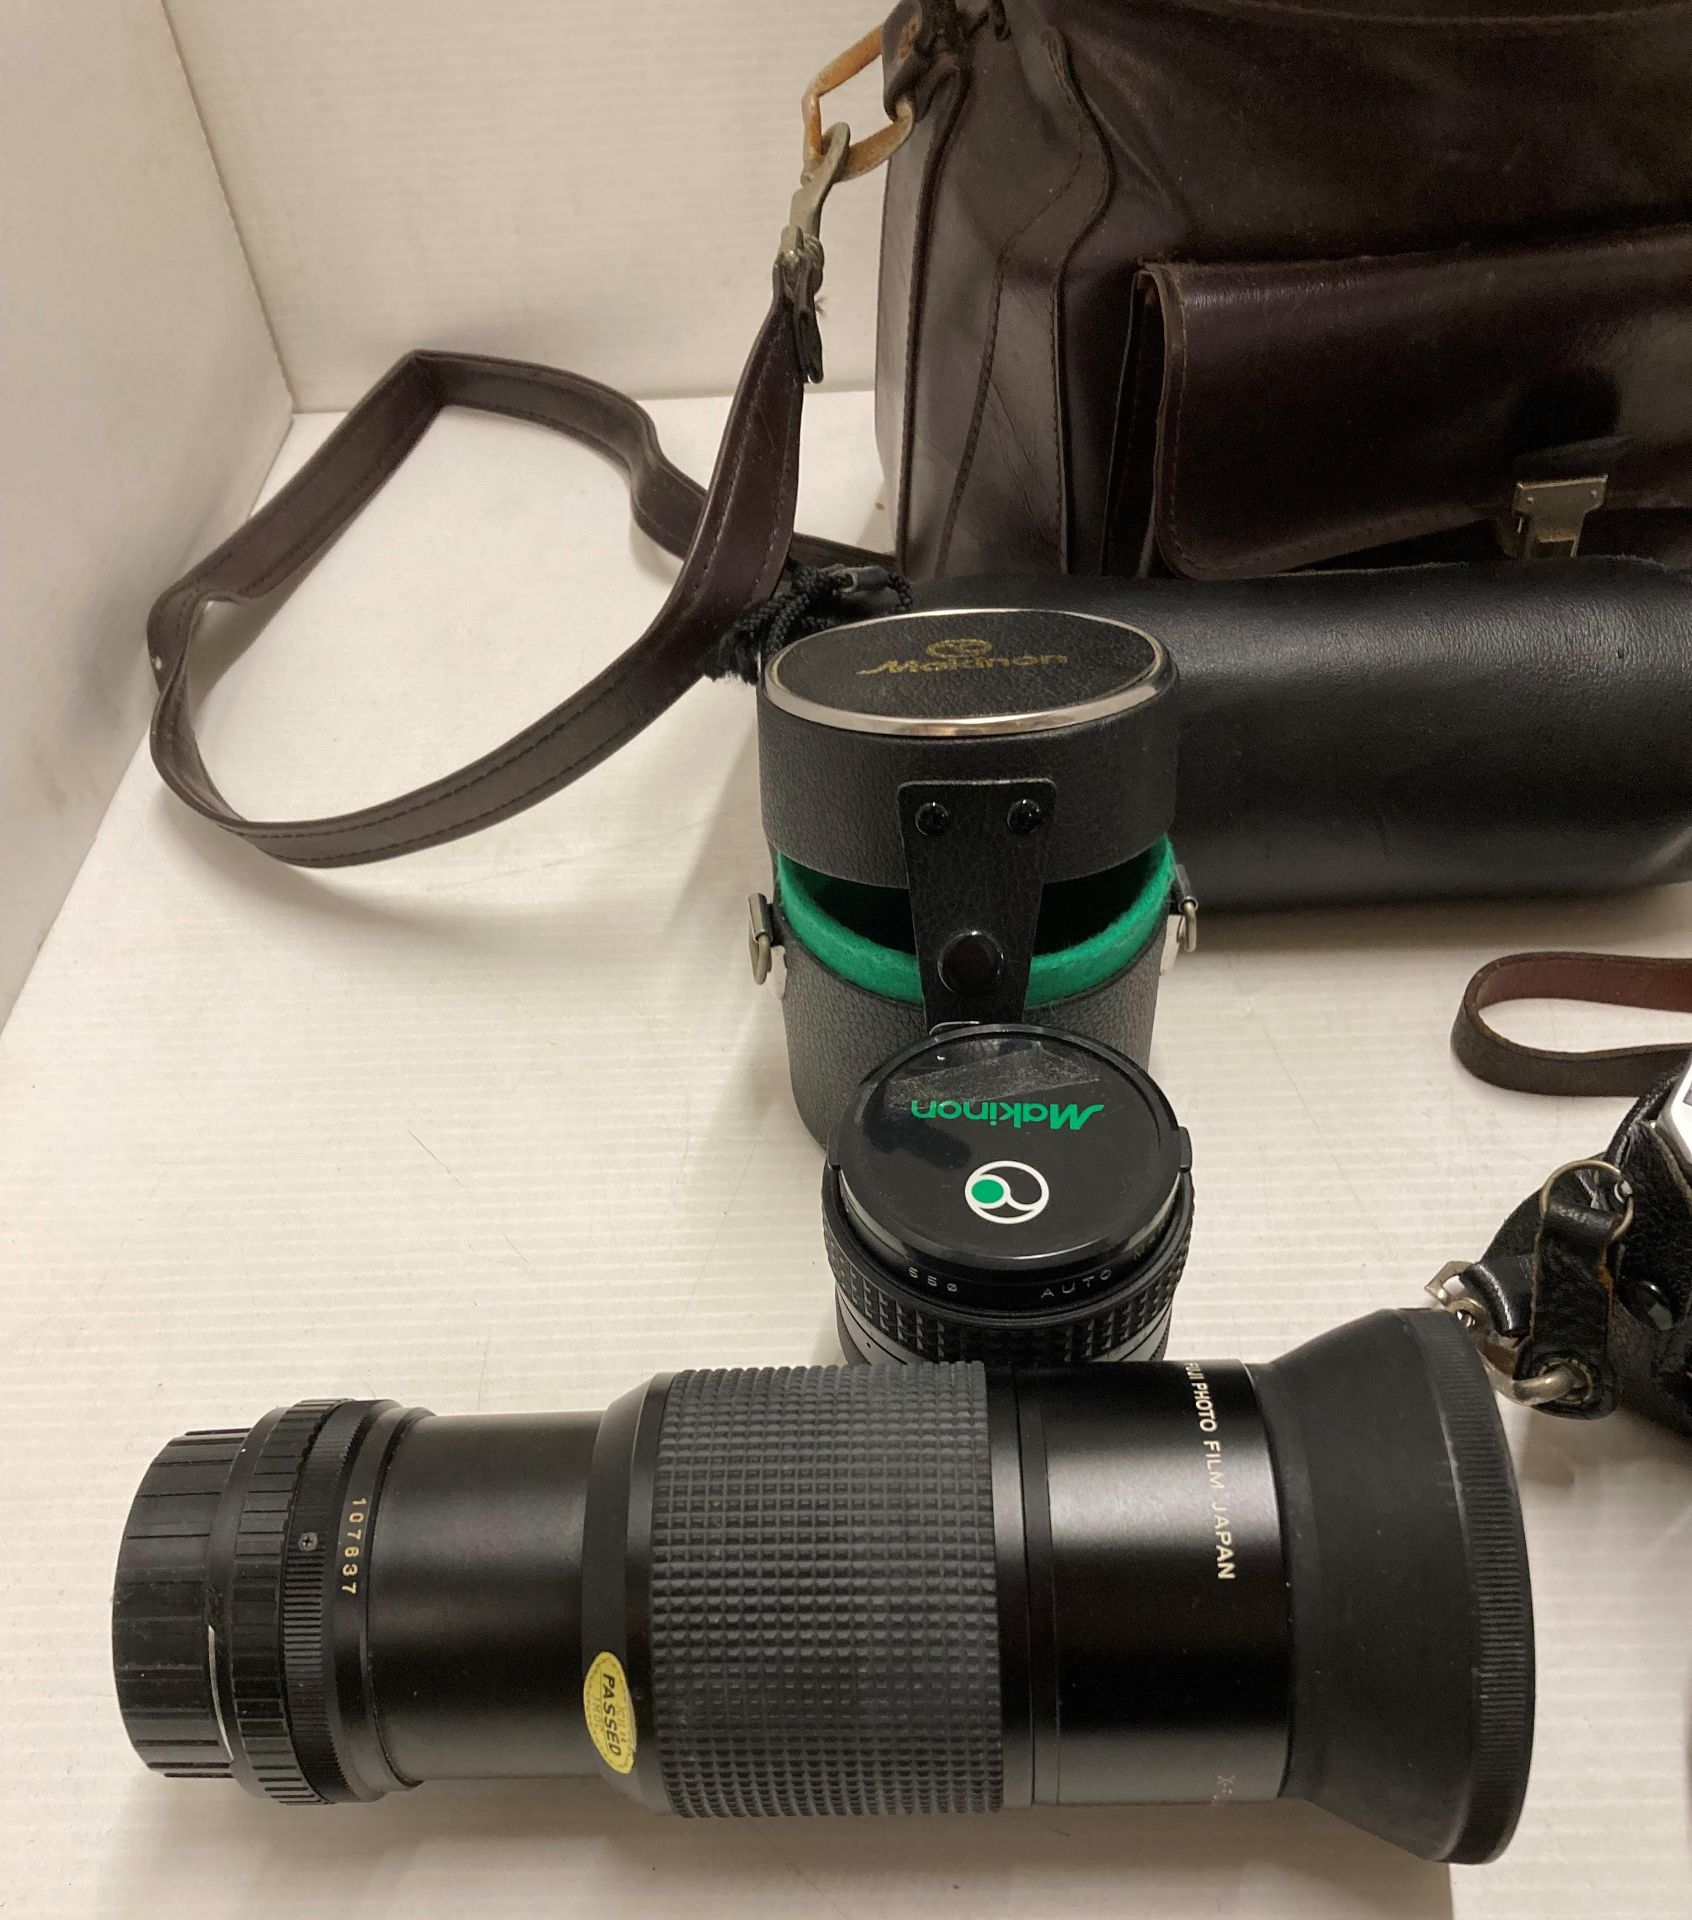 Paxette Pronior-S camera, Fujica STX-1 camera, X-Fujinar-Z 80-200m lens, Makinon 24mm lens, etc. - Image 2 of 4